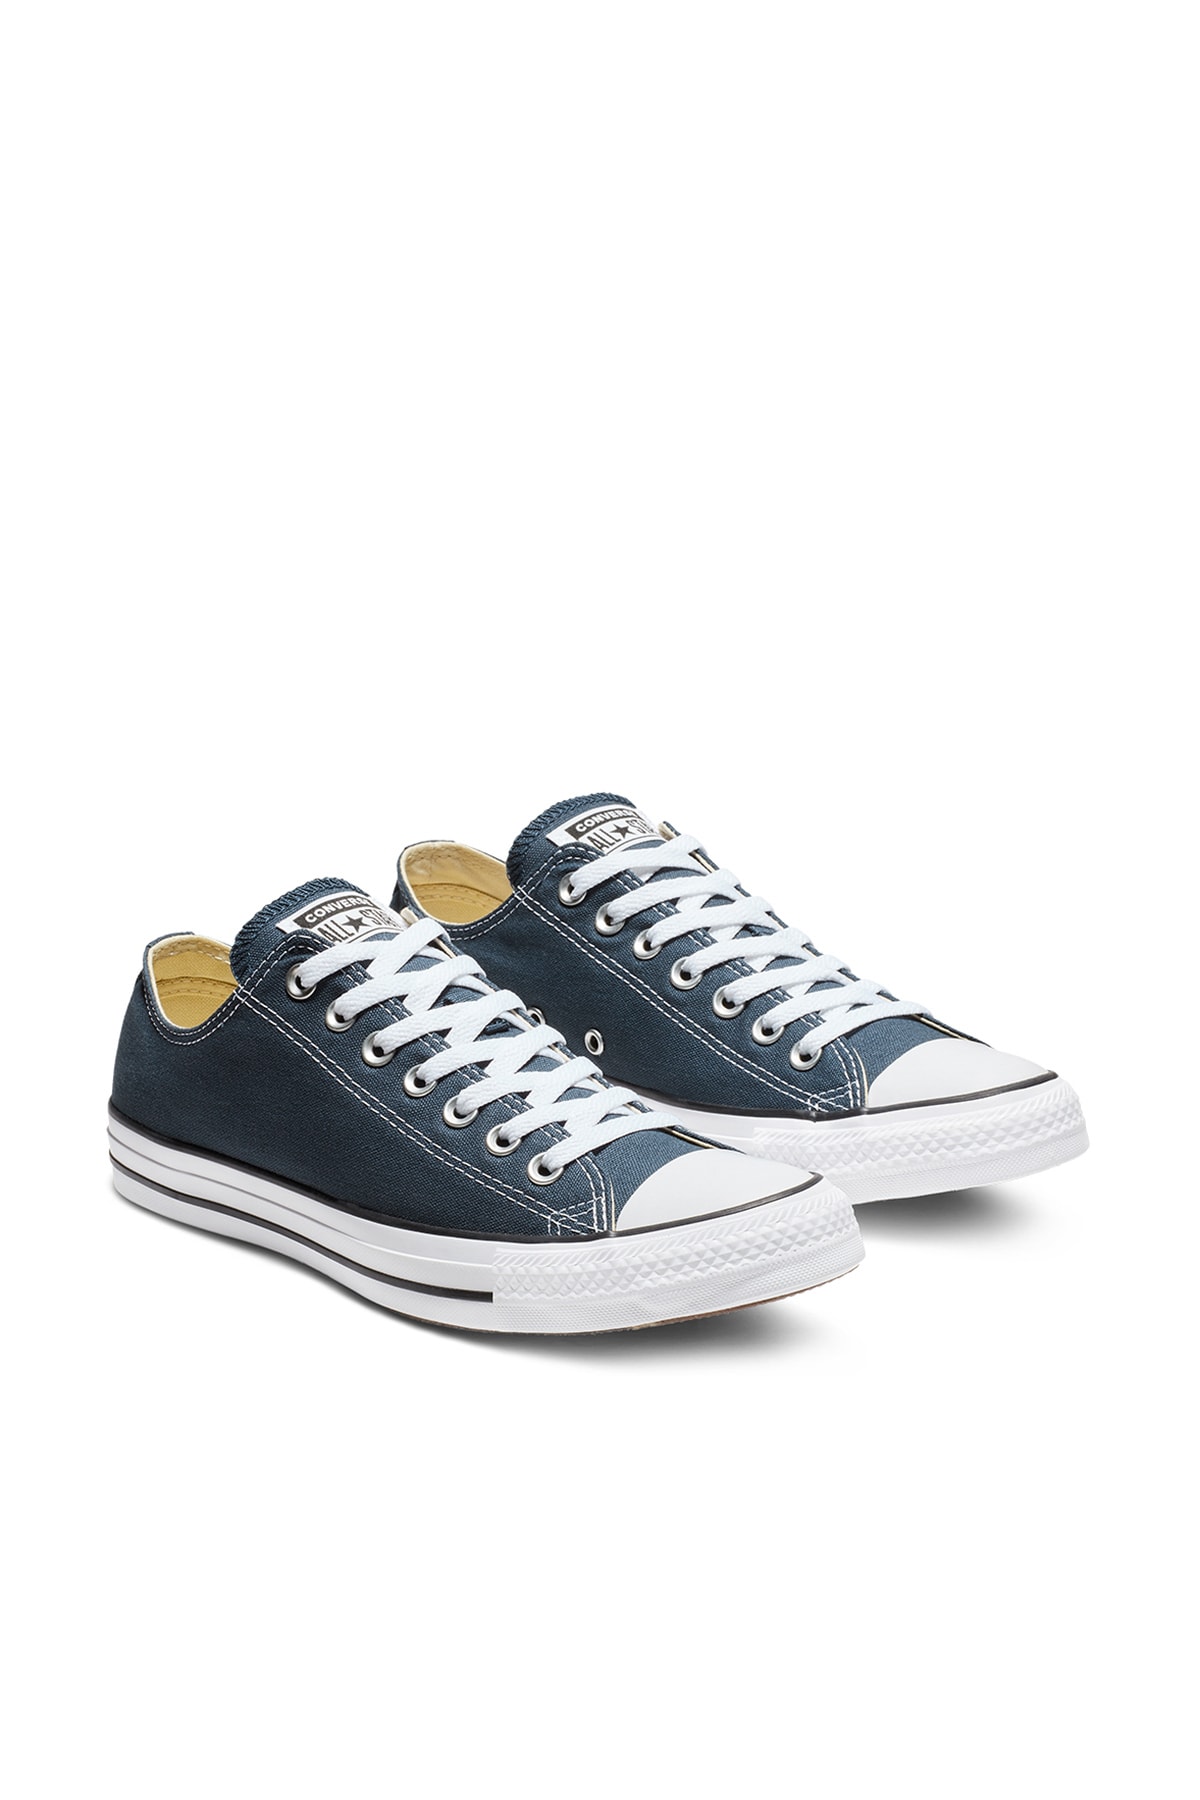 Converse Sneakers - Navy blue - Flat - Trendyol